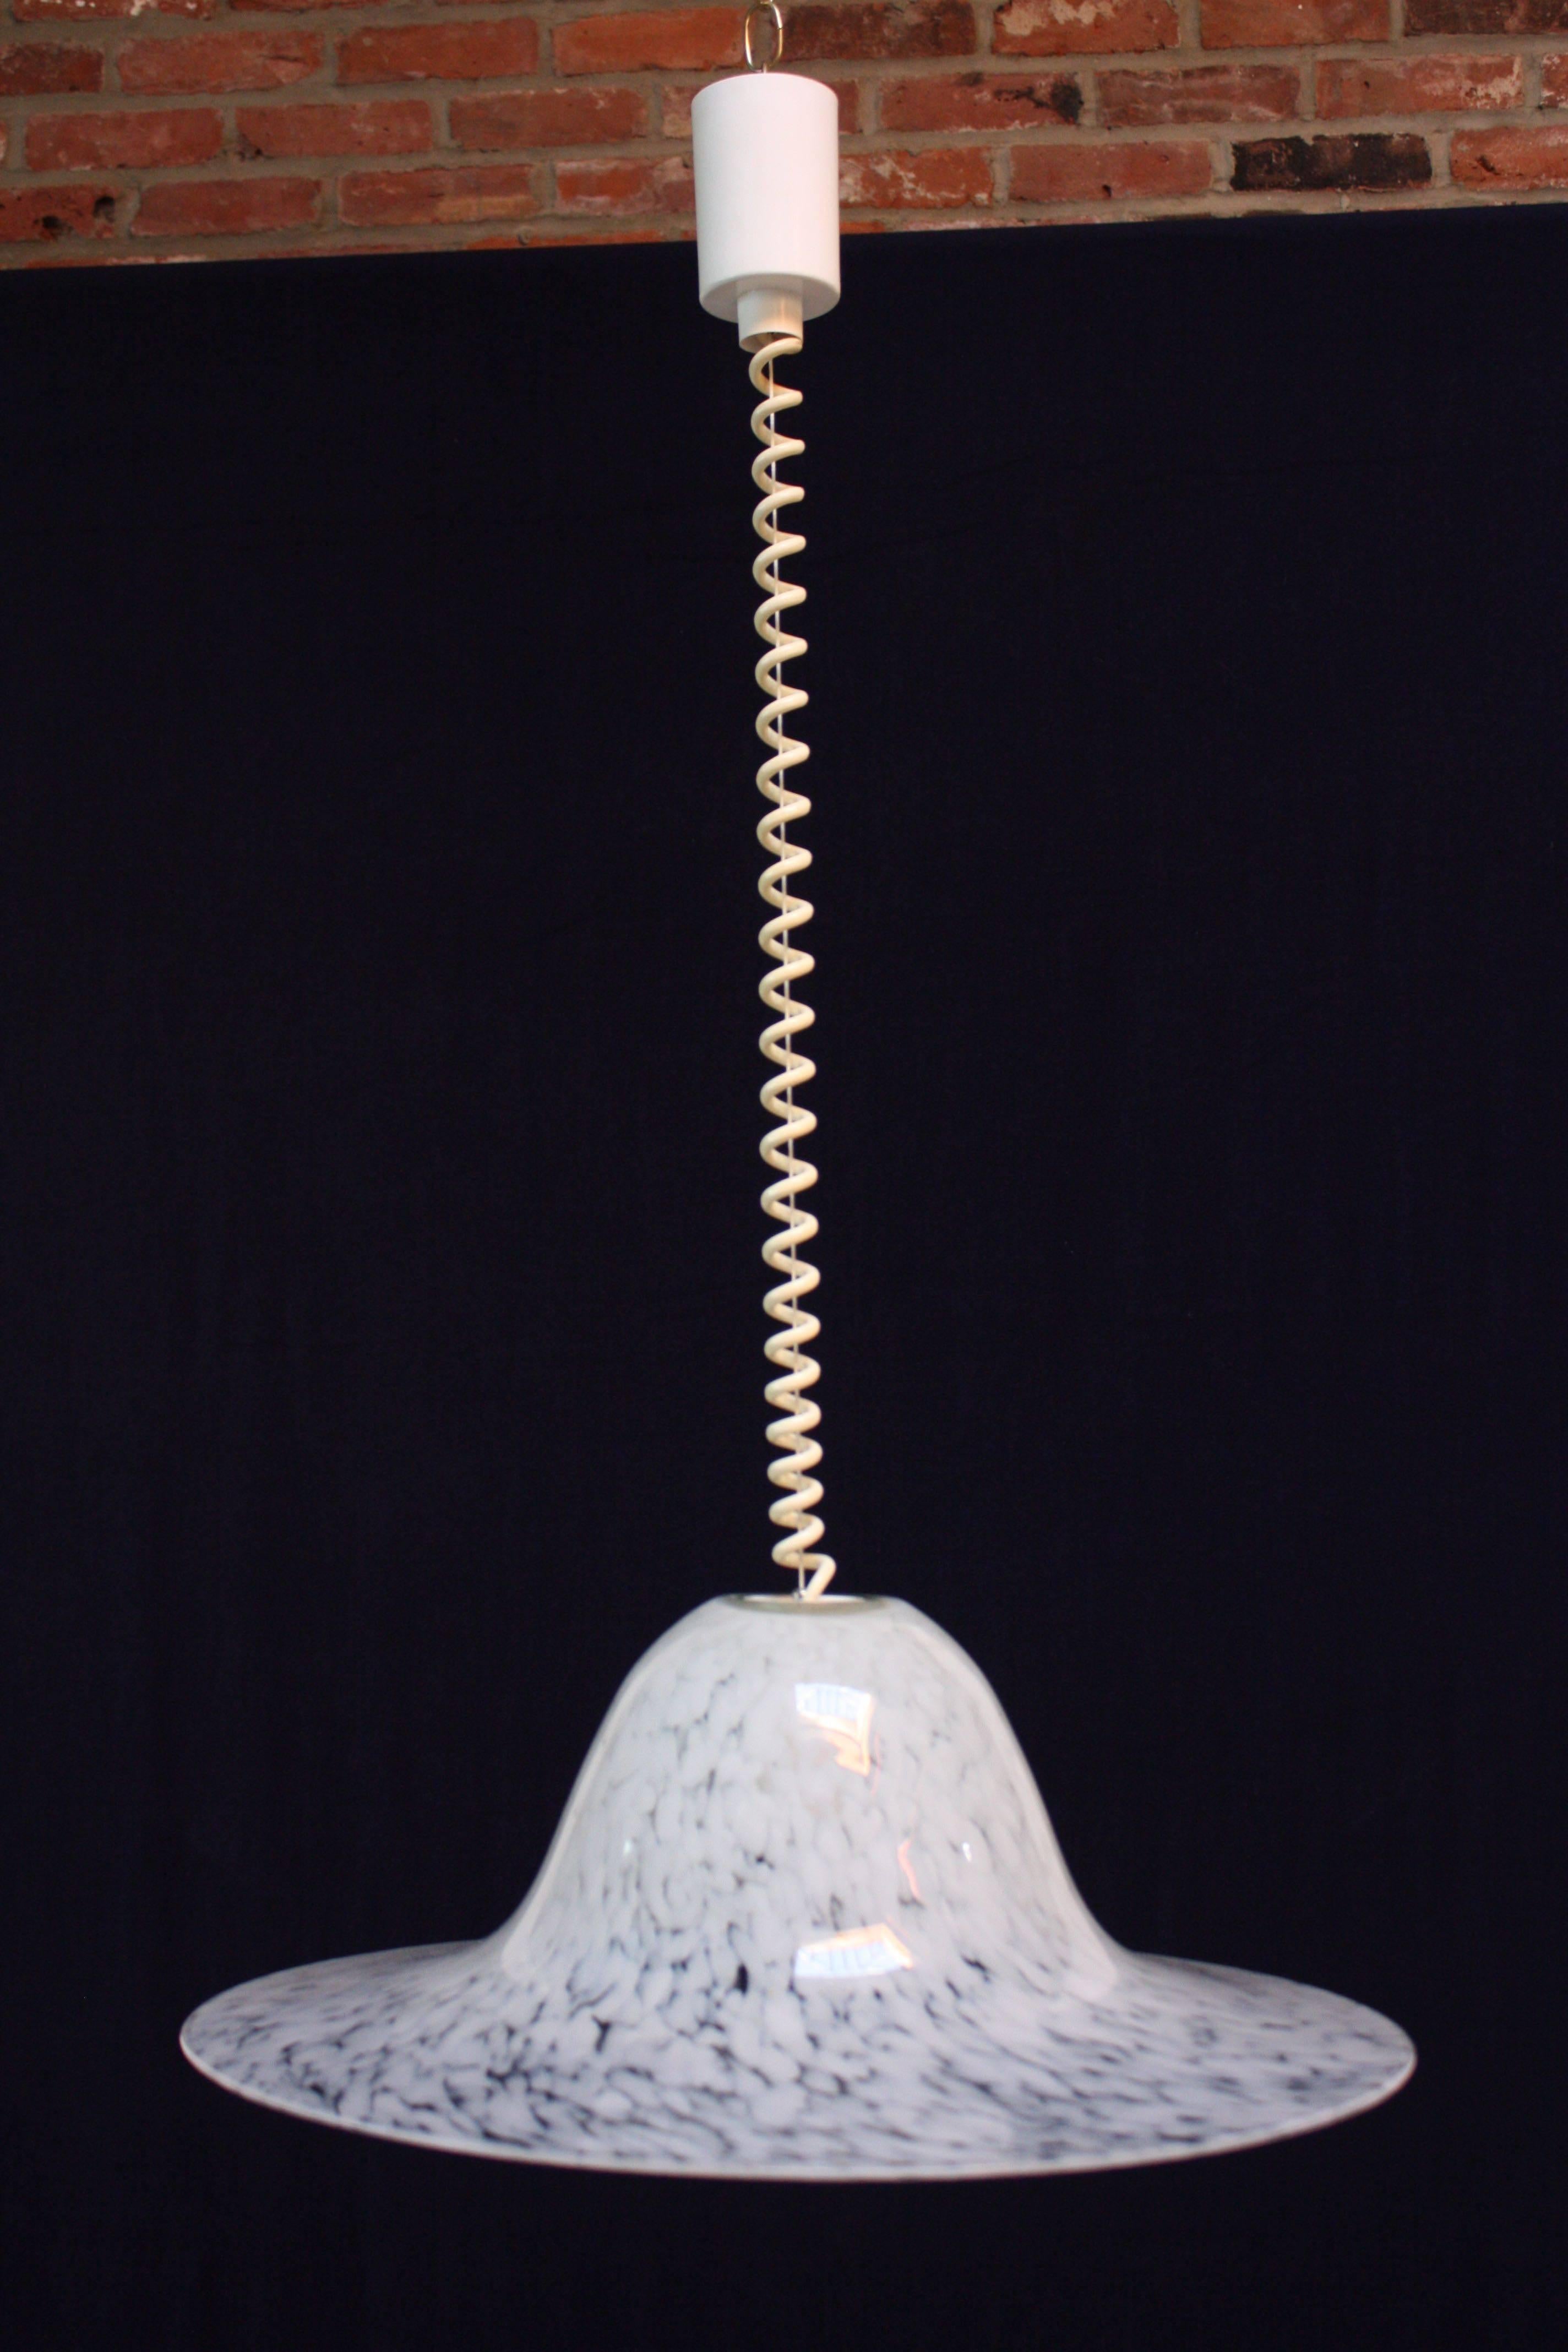 Moderne deutsche Pendelleuchte mit einer Fassung, entworfen von Aloys Ferdinand Gangkofner für Peill & Putzler, um 1970. Besteht aus mundgeblasenem Klarglas mit einem schneeweißen, länglichen Punktmuster. Außergewöhnliches Design und Form mit einem